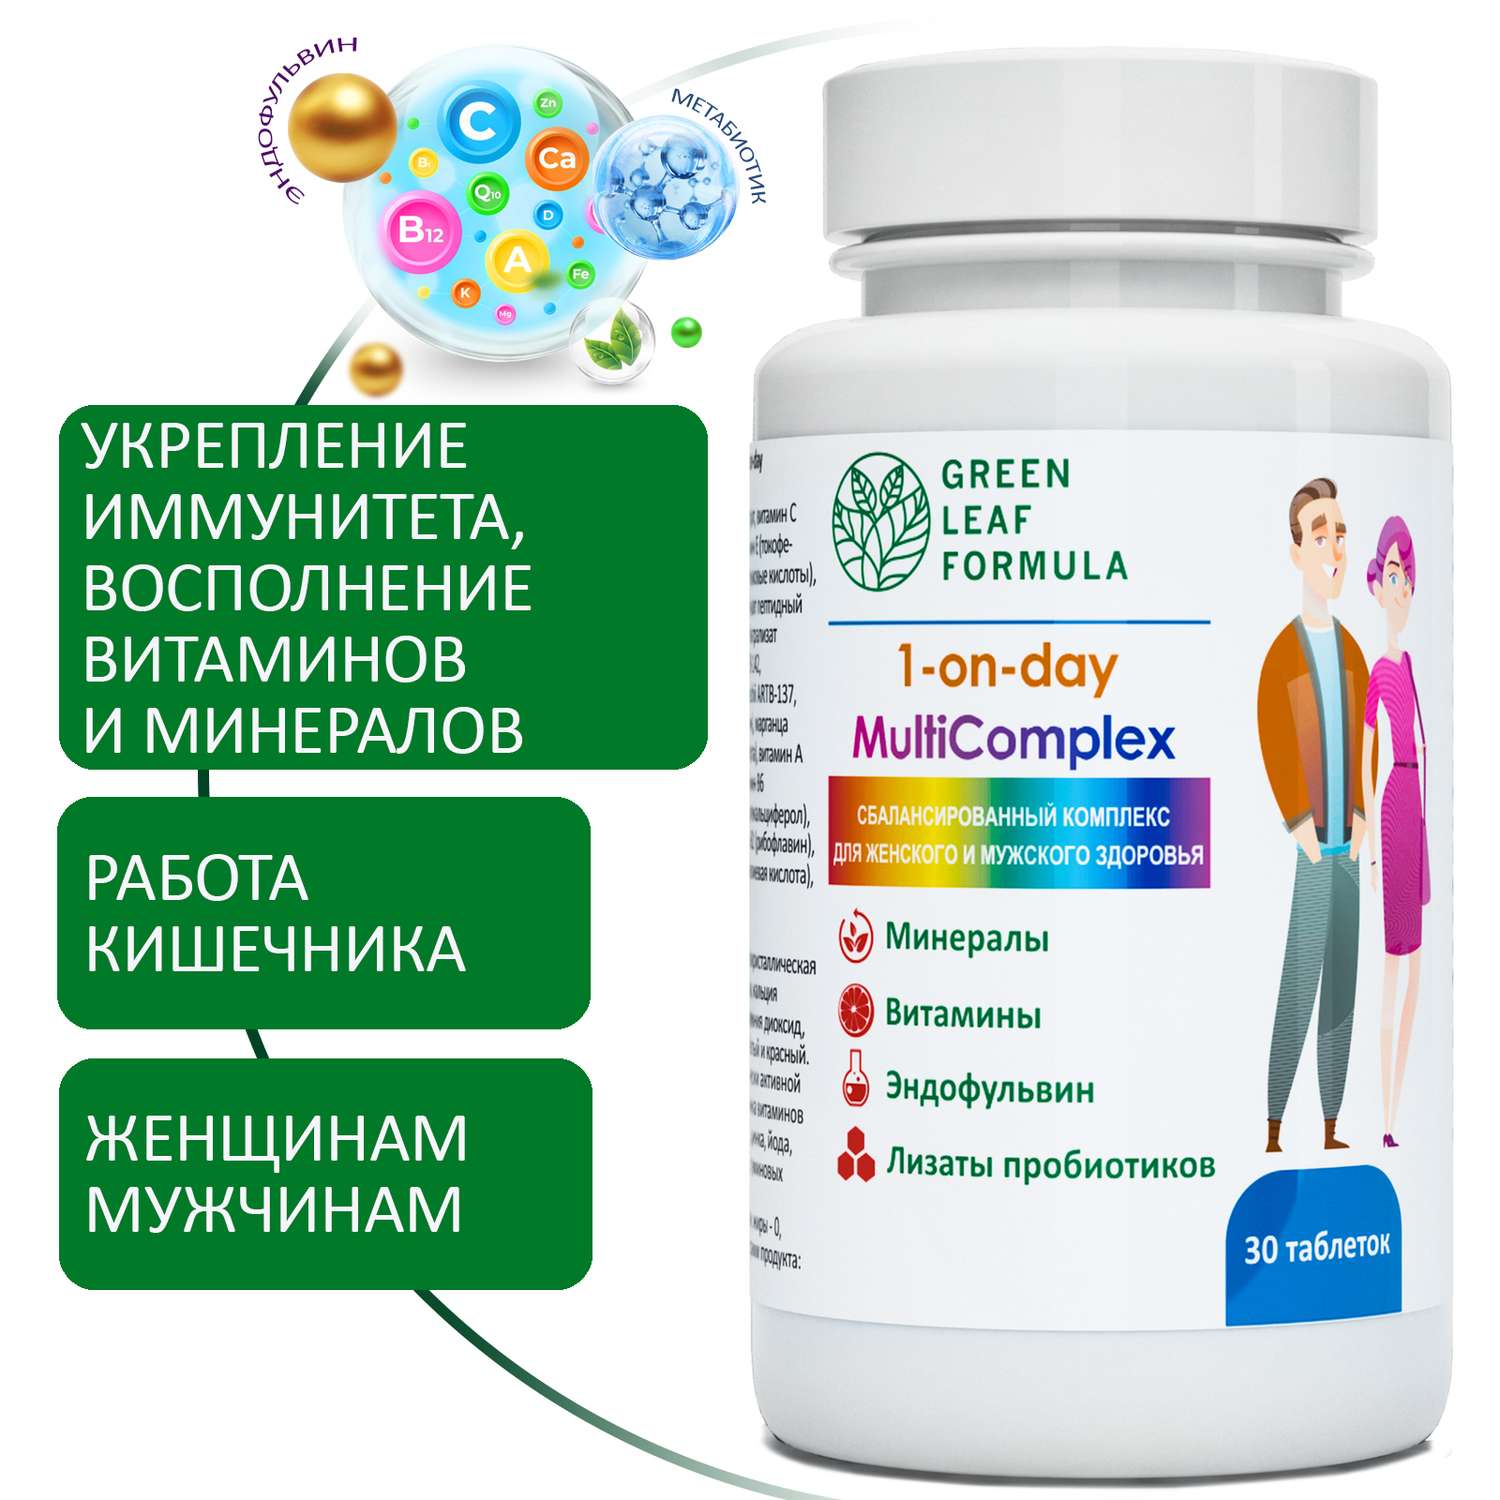 Витаминно-минеральный комплекс Green Leaf Formula с метабиотиками 13 витаминов + 8 минералов 1050 мг 30 таблеток - фото 1